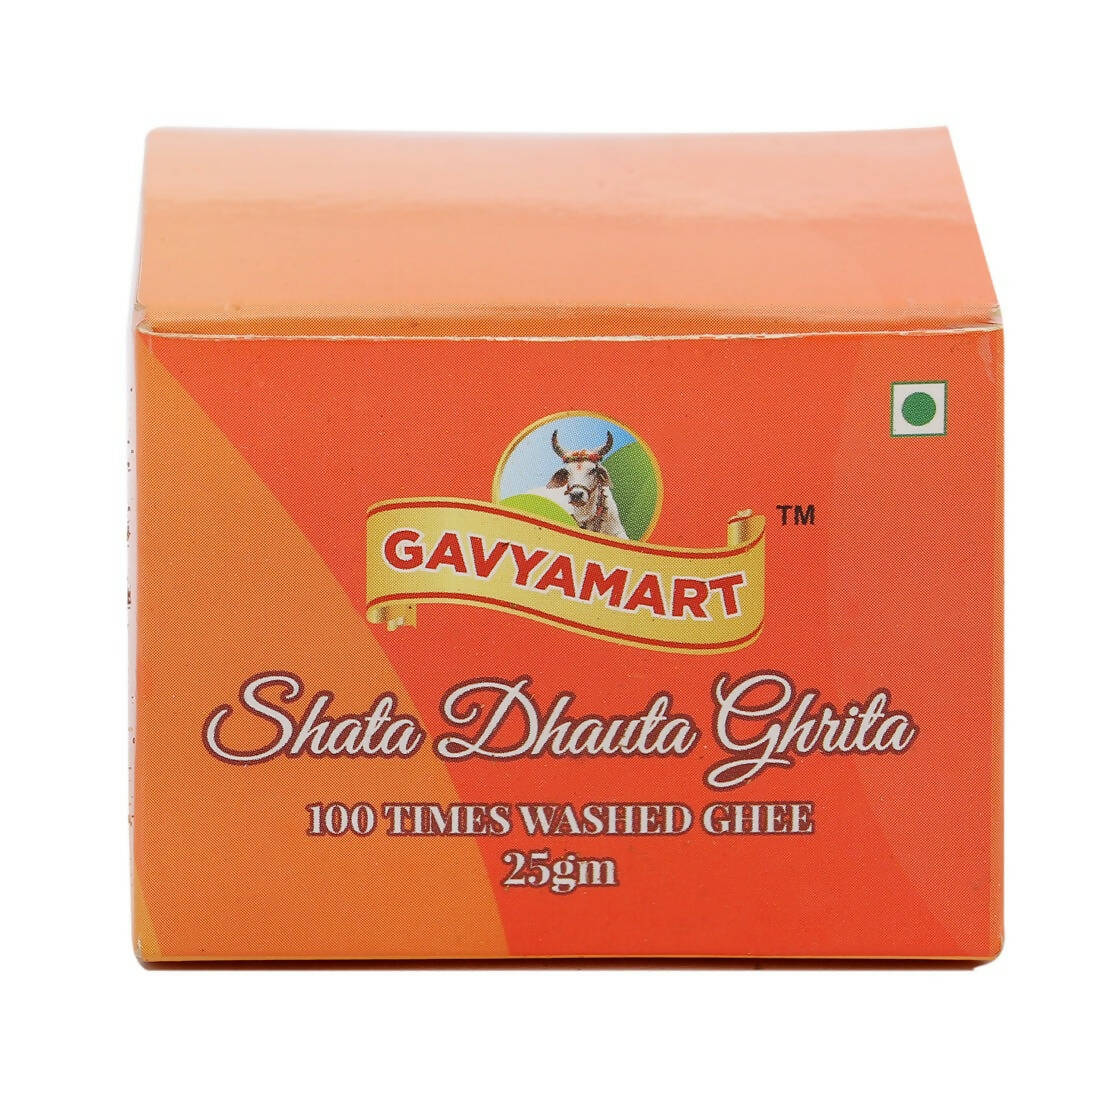 Gavyamart Shata Dhauta Ghrita - Skin Cream (100 times washed Ghee) - BUDNE